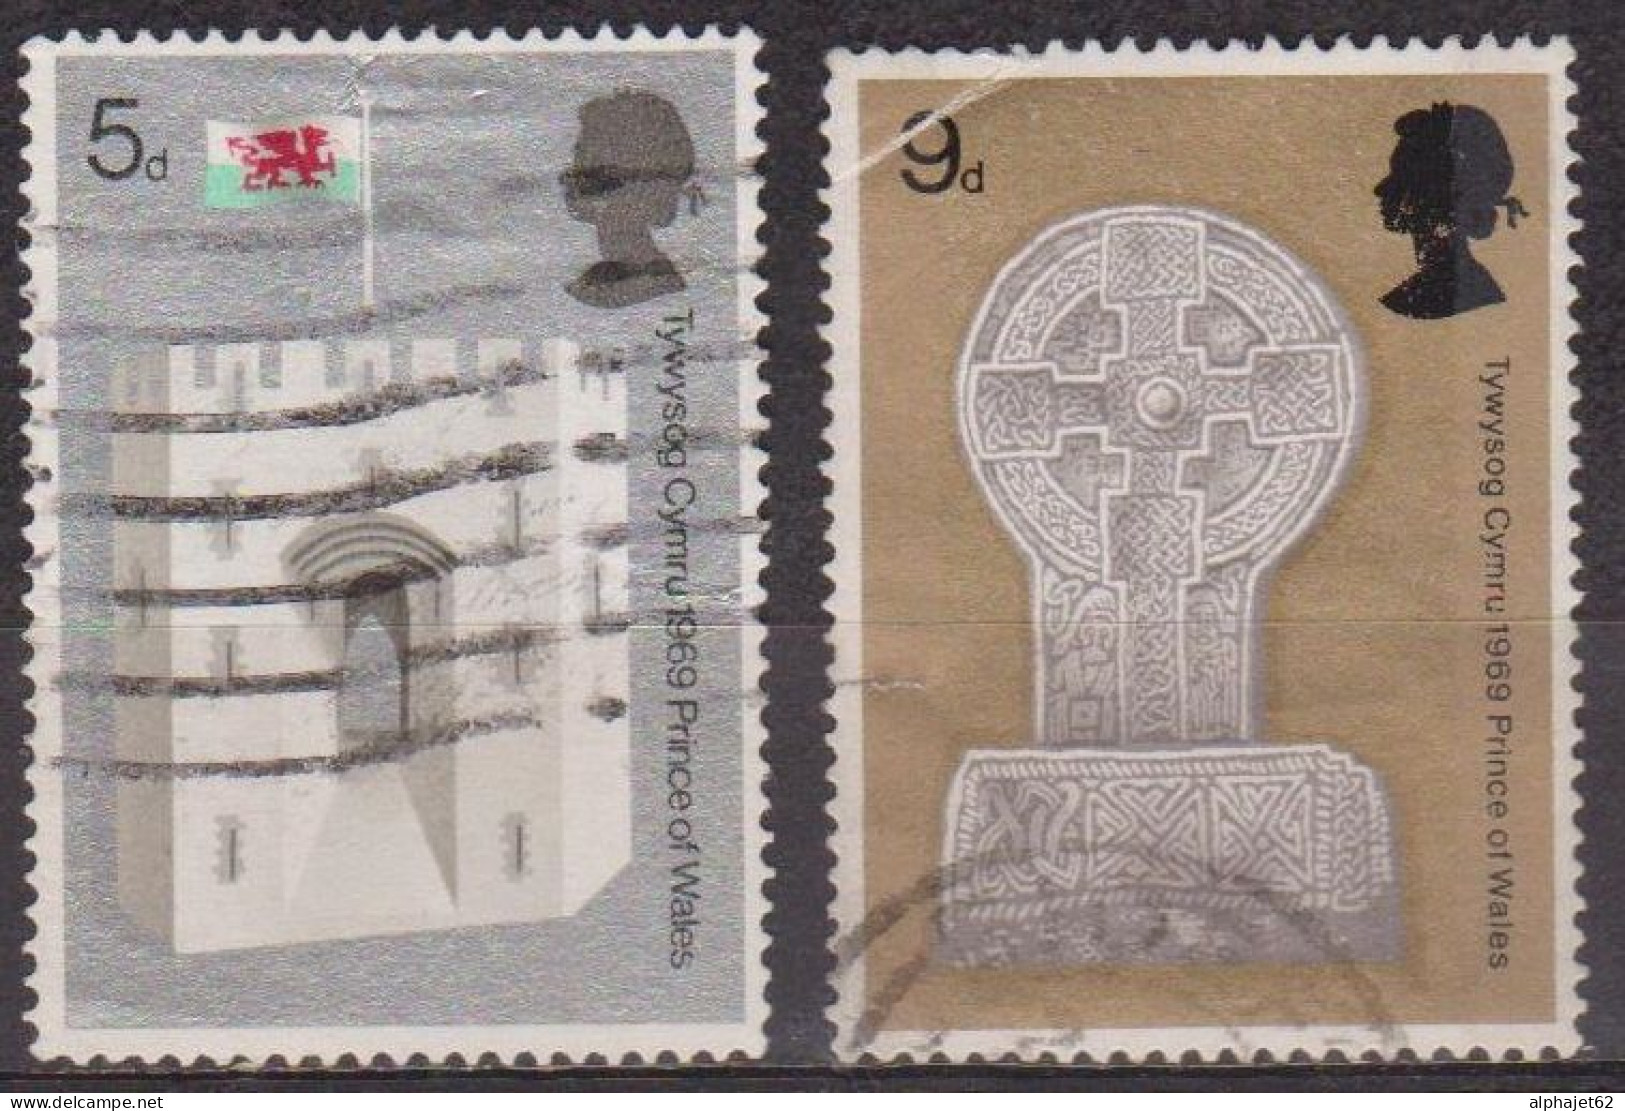 Pays De Galles, Chateau De Caernarvon- GRANDE BRETAGNE - Croix Celtique, Porte Du Roi - N° 571- 572 - 1969 - Gebraucht